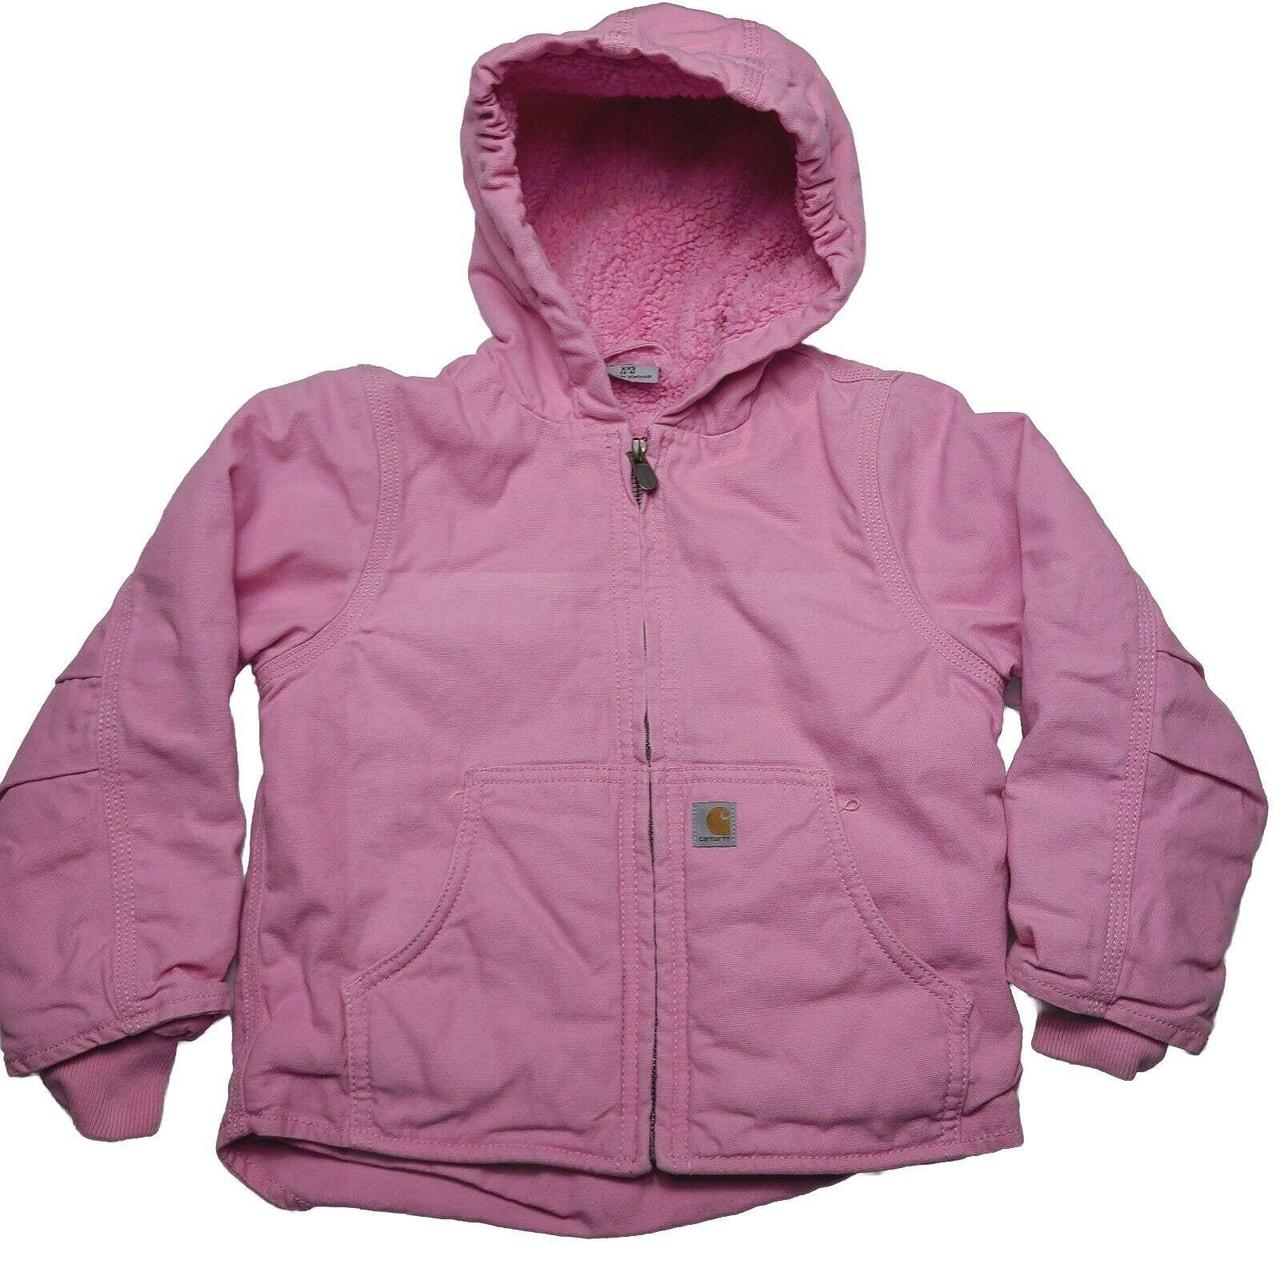 Carhartt Pink Duck Canvas Coat Kids Girls Size XXS... - Depop